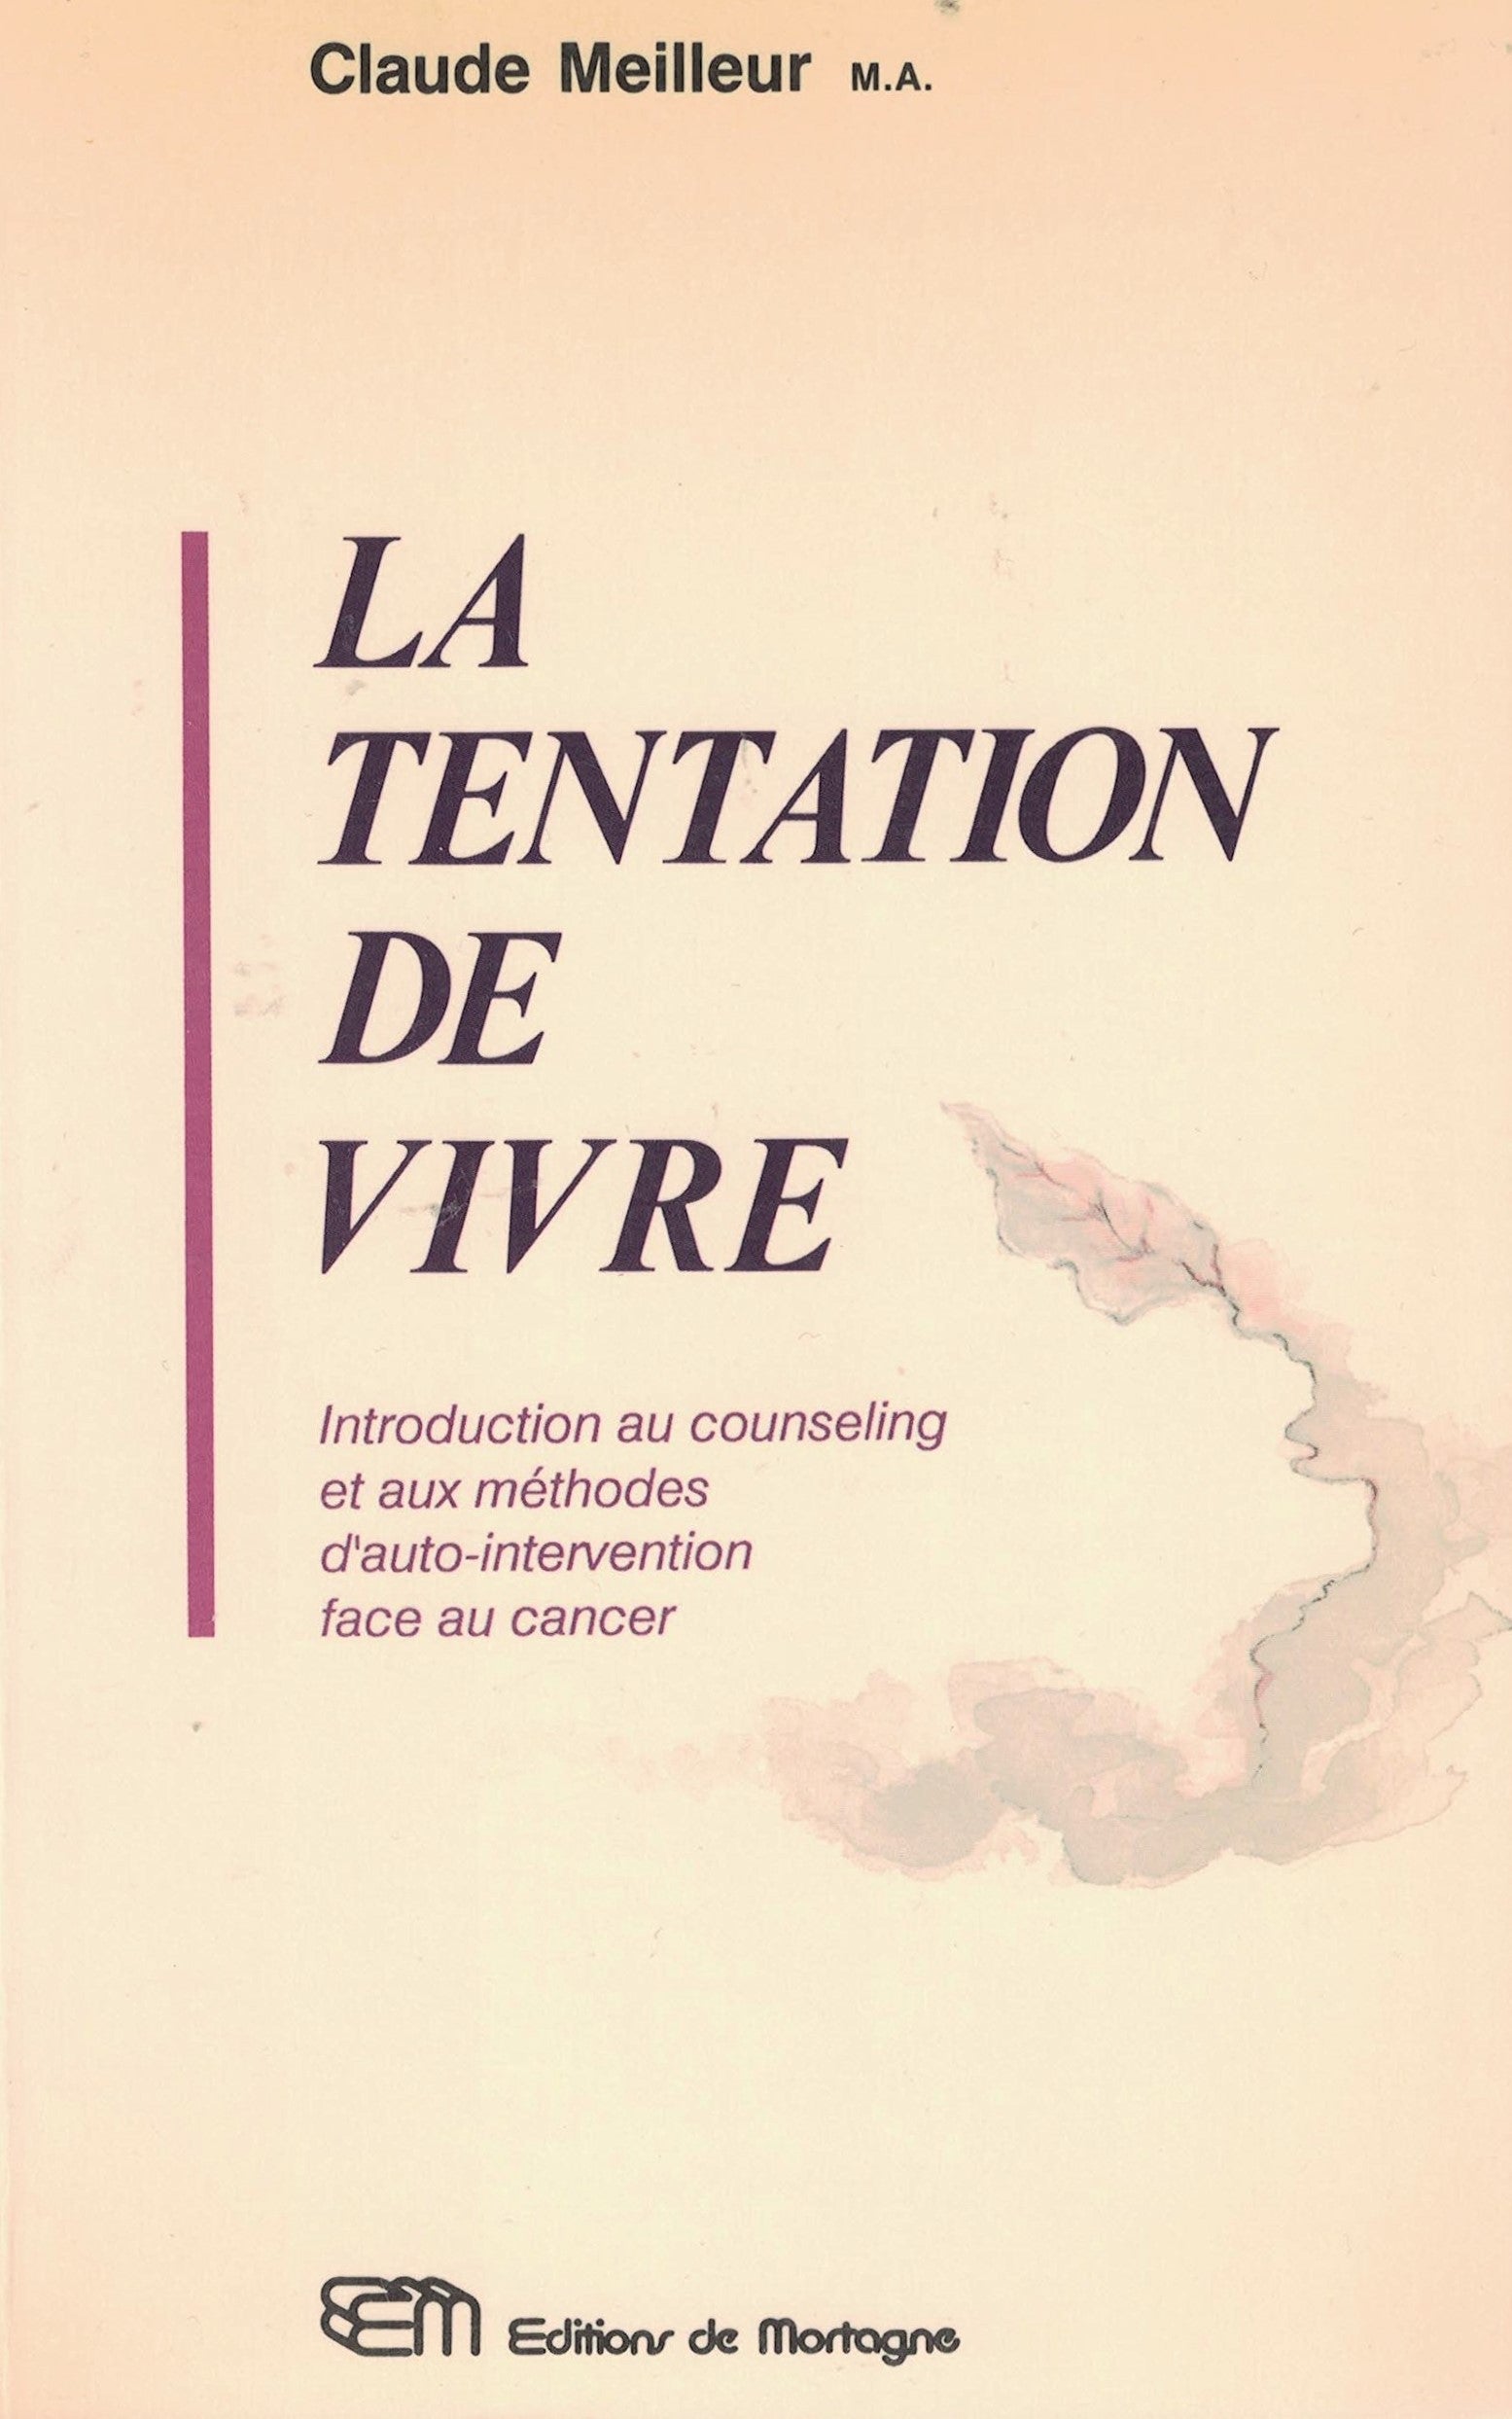 Livre ISBN 2890743179 La tentation de vivre : Introduction au counseling et aux méthodes d'auto-intervention face au cancer (Claude Meilleur)